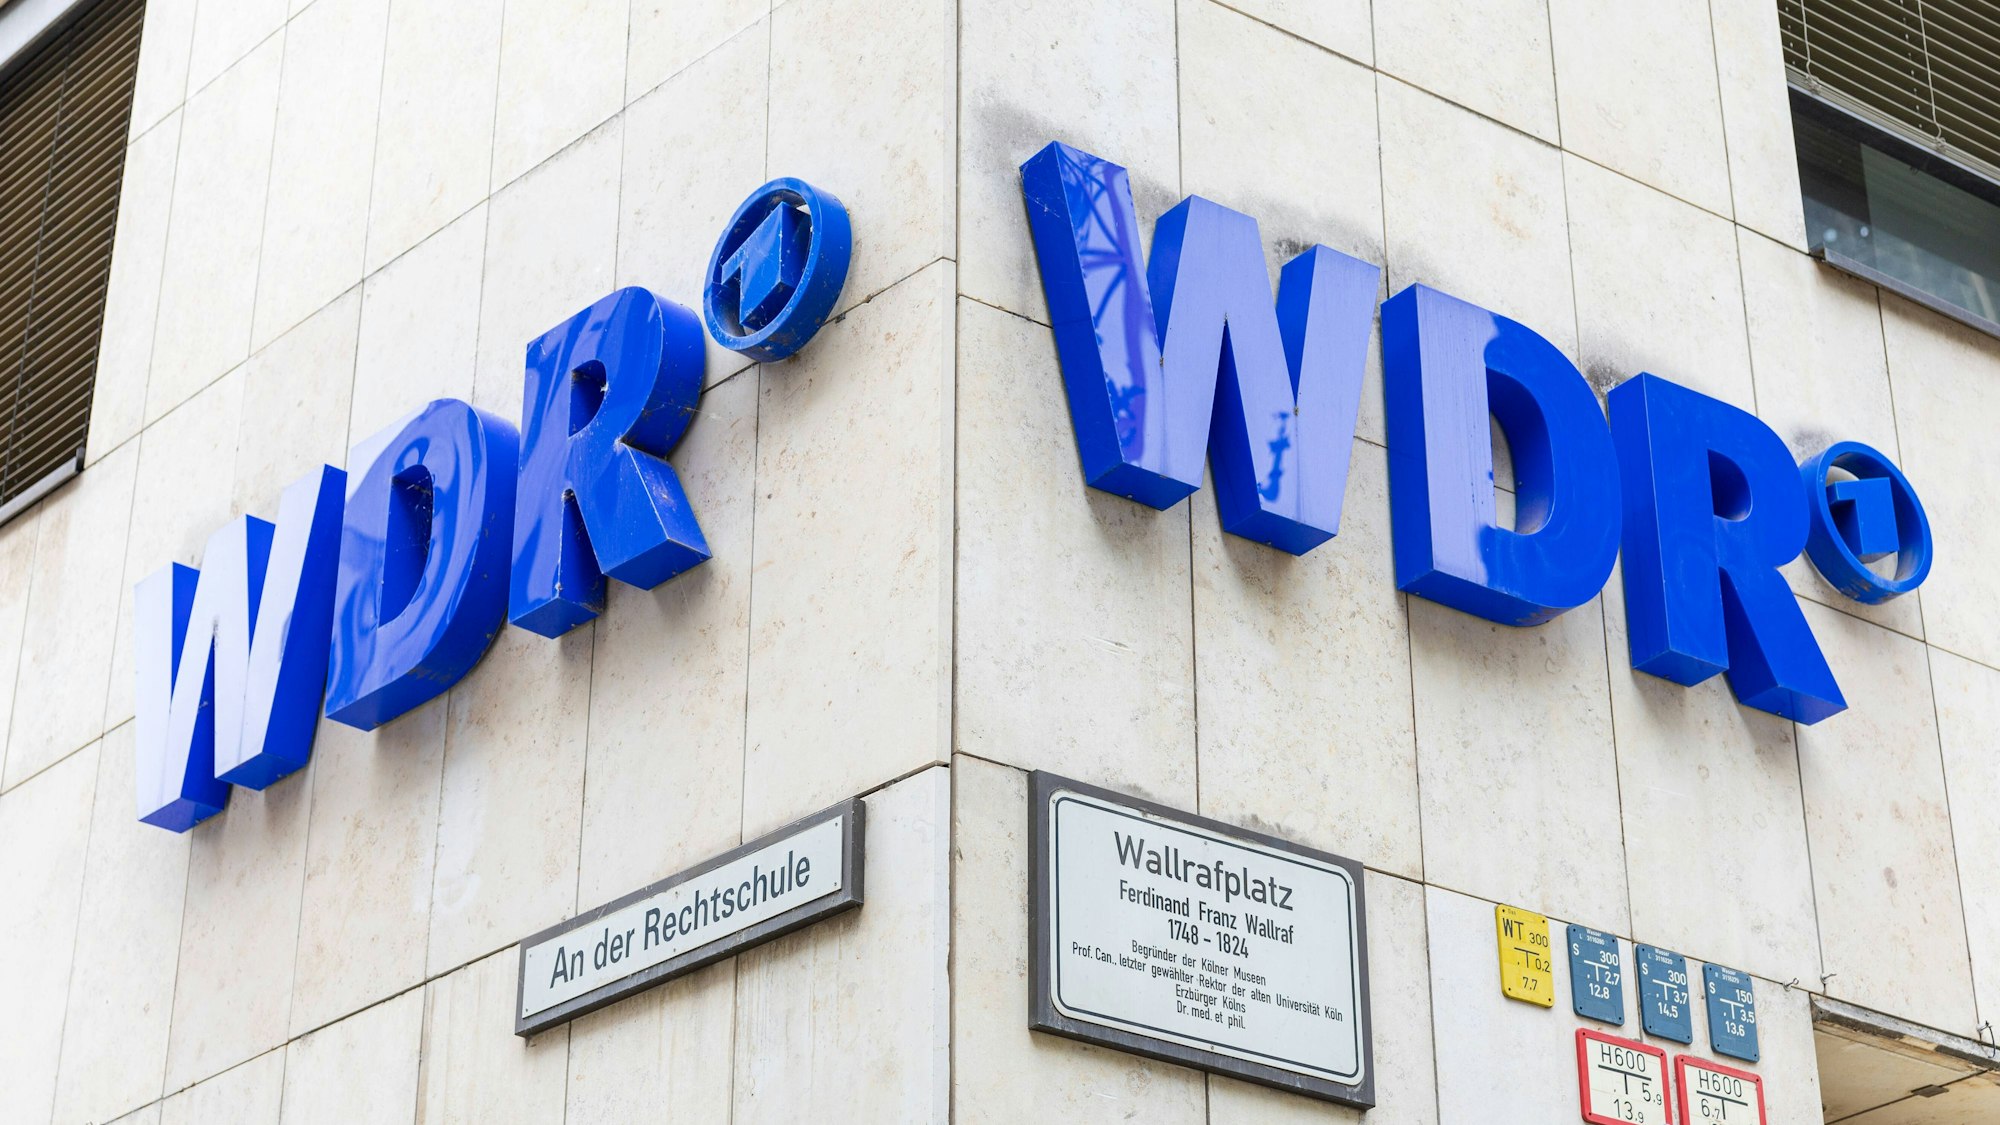 Das Logo des WDR Westdeutscher Rundfunk, der öffentlich rechtliche Rundfunk und Fernsehsender am Hauptgebäude in Köln.